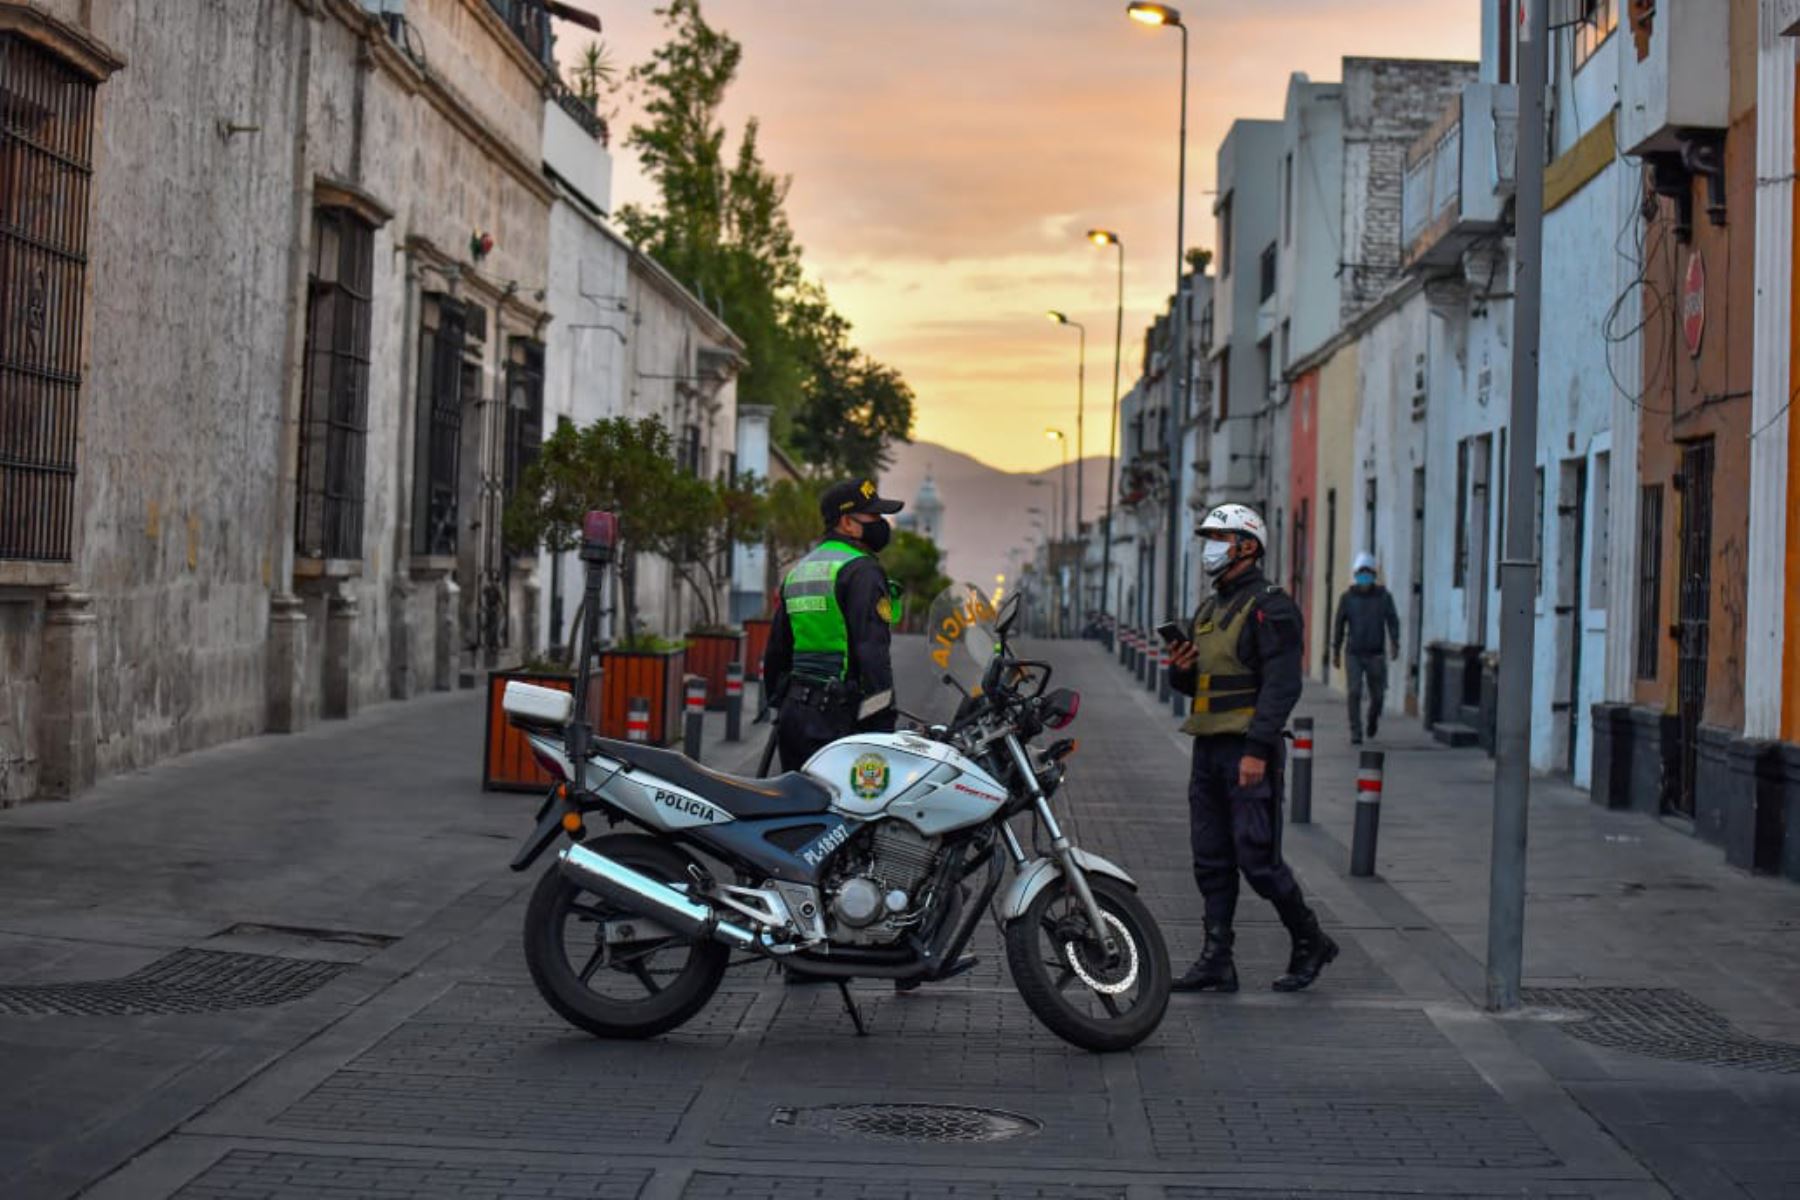 Solo circularon unidades de transporte público y algunos vehículos particulares en la ciudad de Arequipa. Foto: ANDINA/Cortesía Diego Ramos